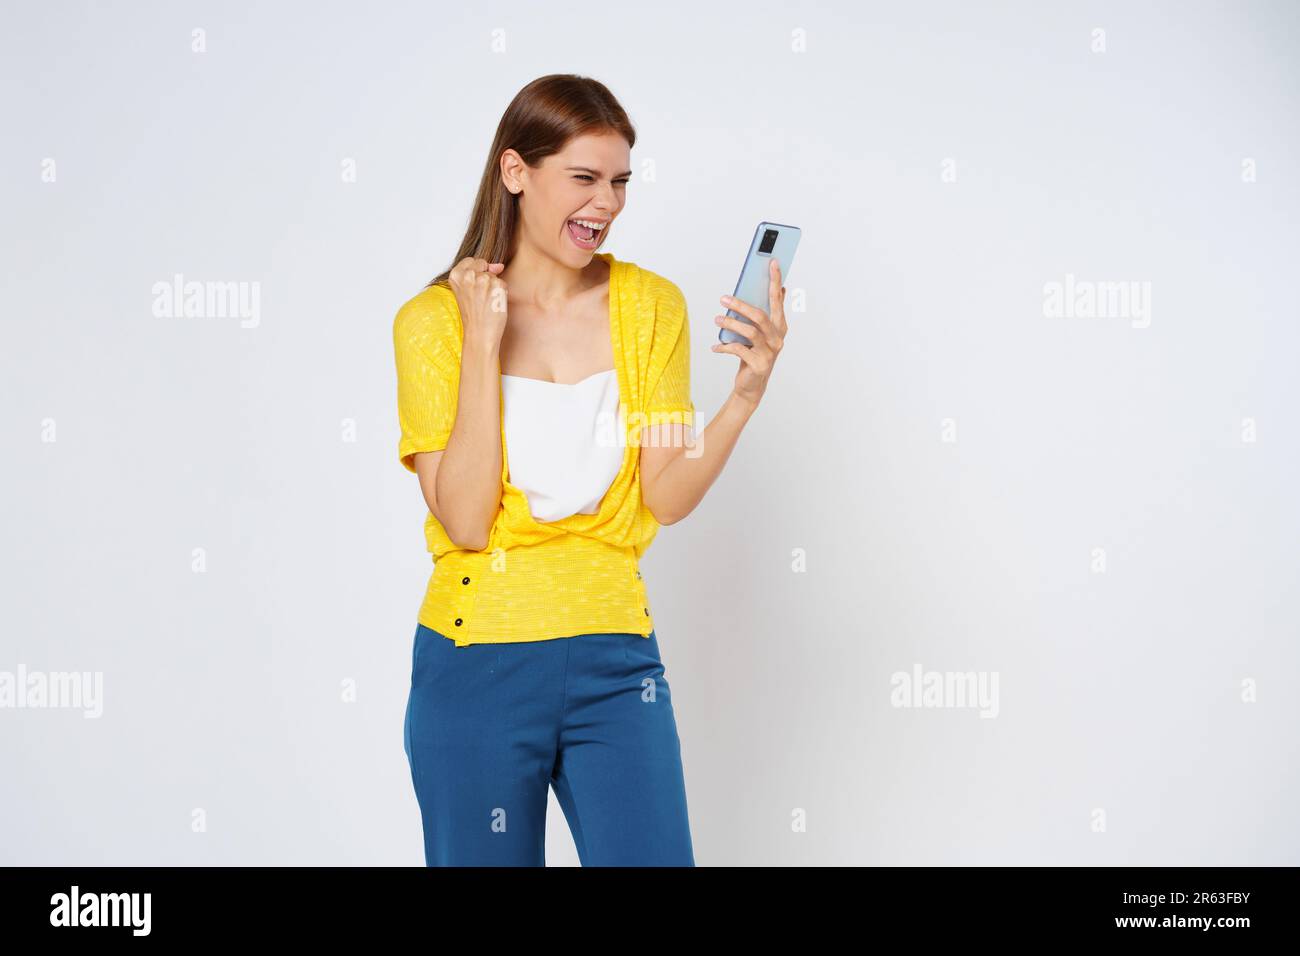 Donna eccitata che festeggia con il telefono cellulare isolato su sfondo bianco. Foto Stock